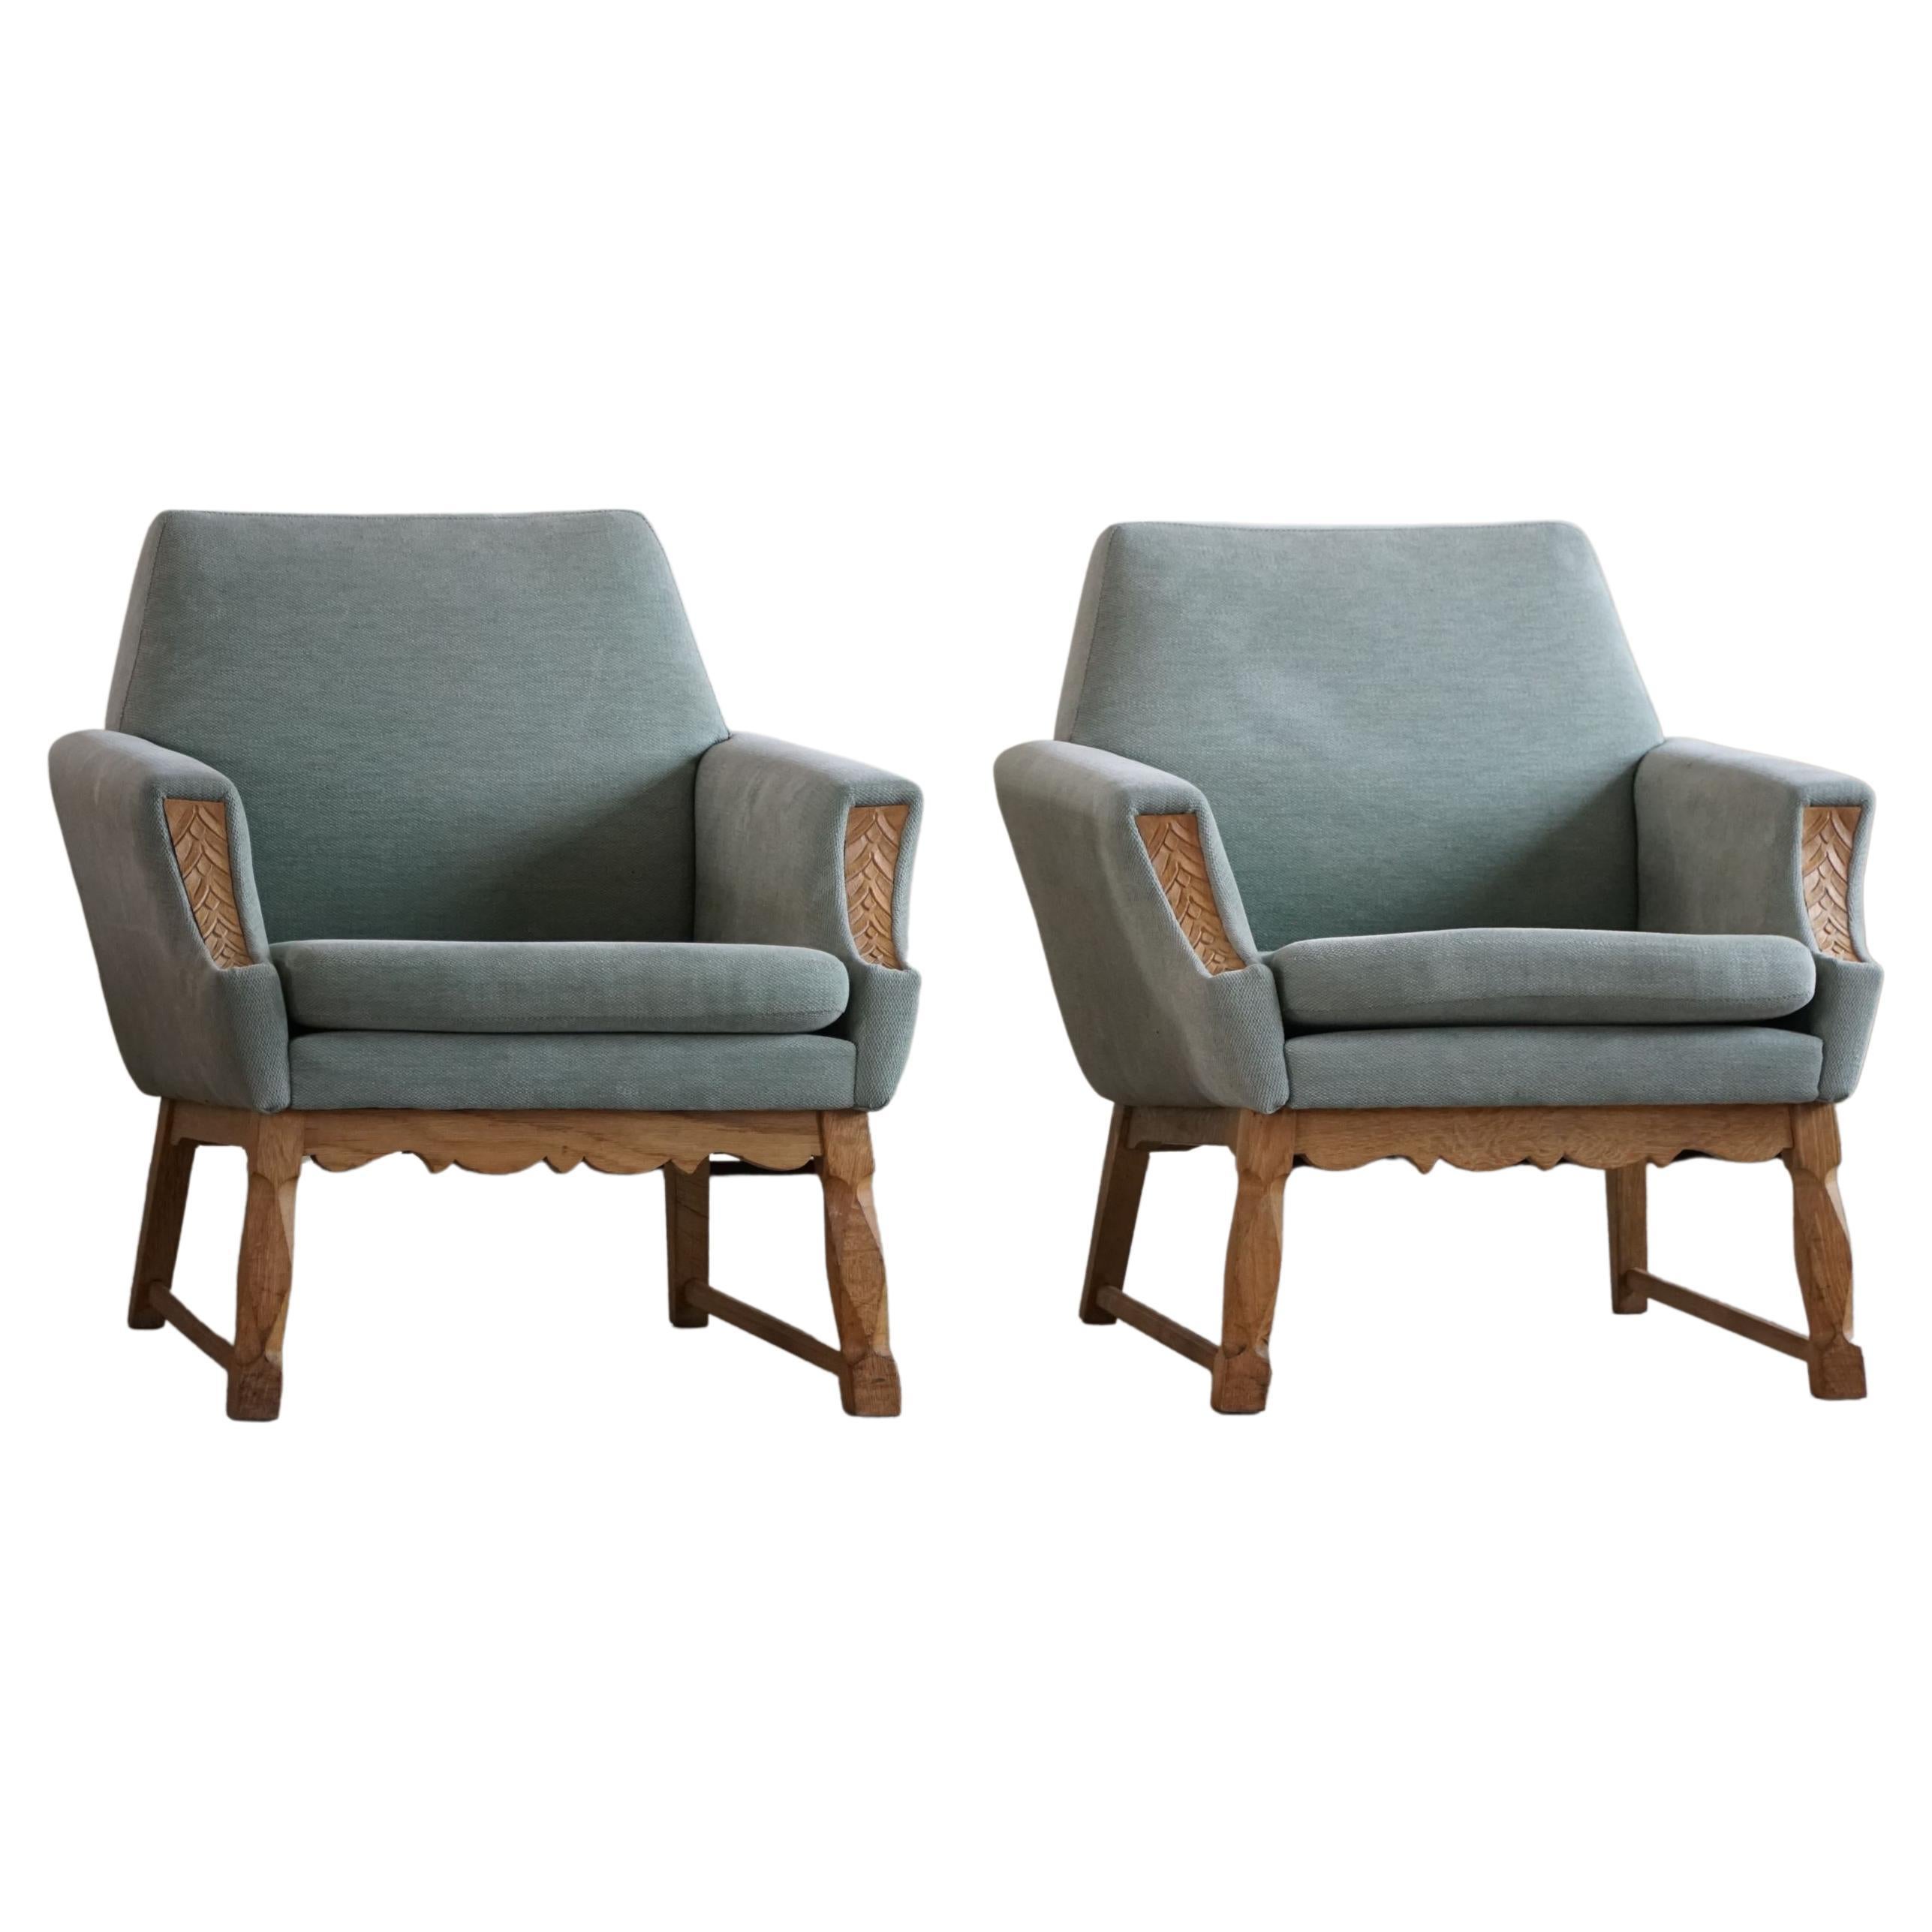 Danish Modern Pair of Lounge Chair, Turquoise Velvet & Oak, Cabinetmaker, 1960s